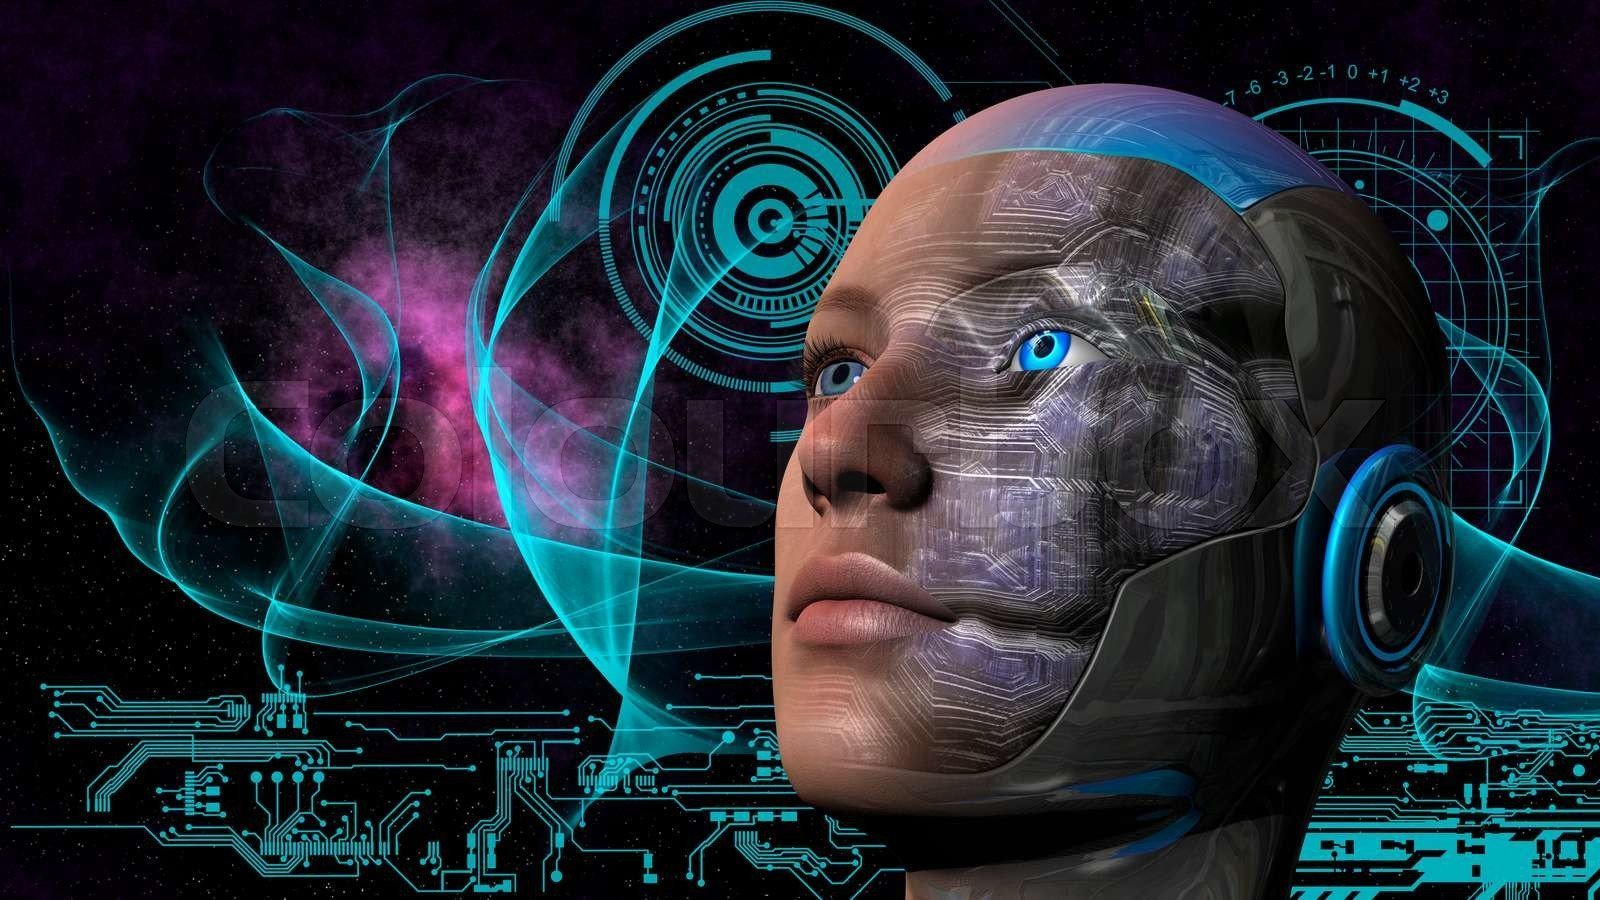 essens operation menneskelige ressourcer Myter om robotter: Vil robotterne overtage verden?